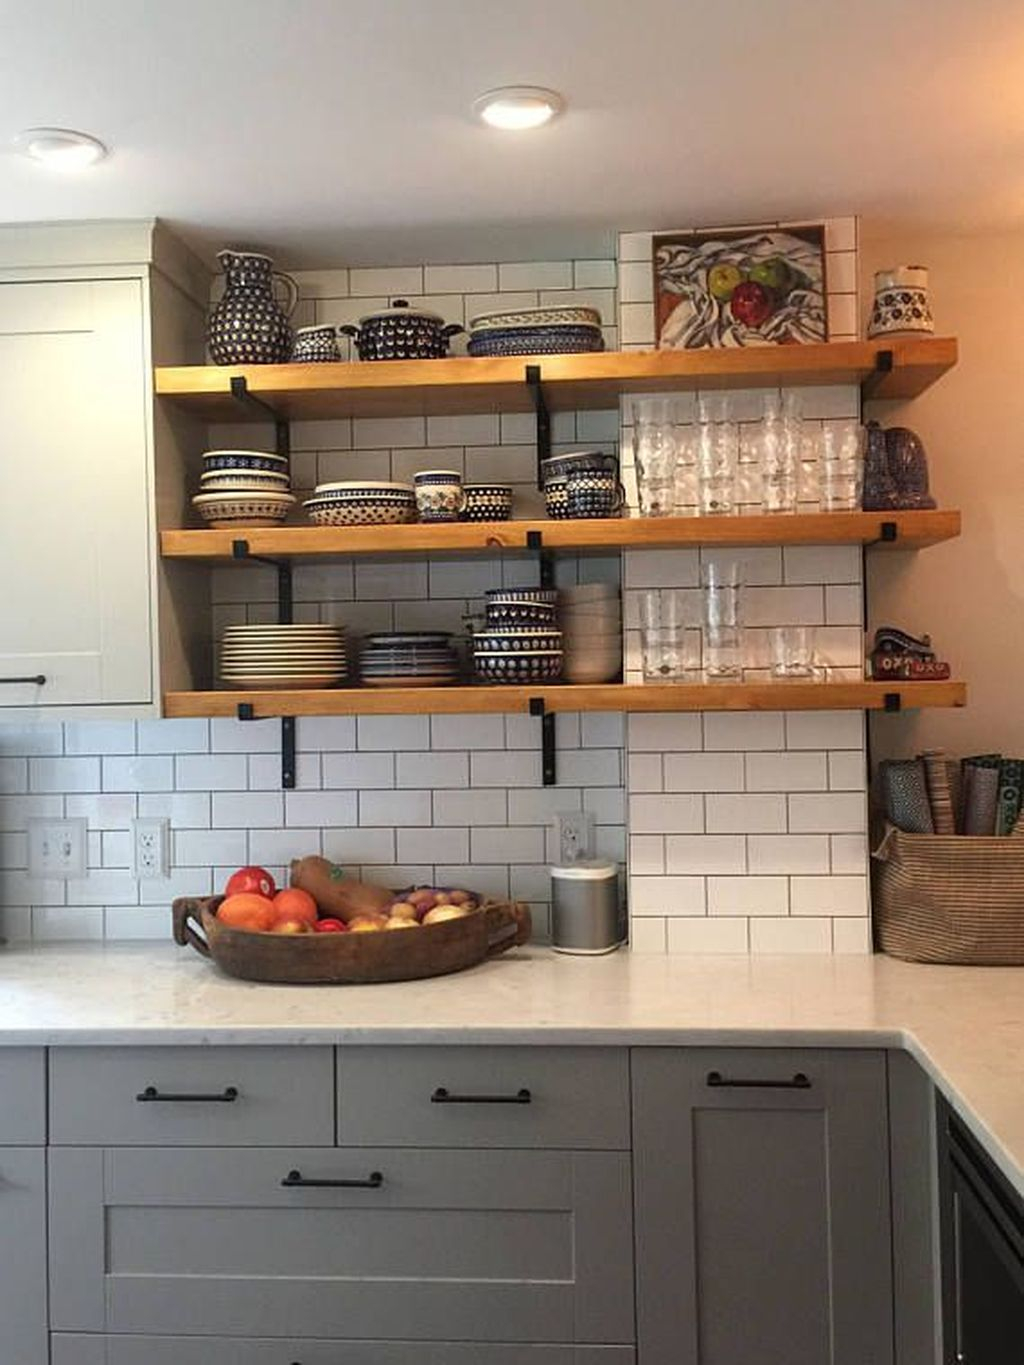 Wonderful Industrial Kitchen Shelf Design Ideas To Organize Your Kitchen38